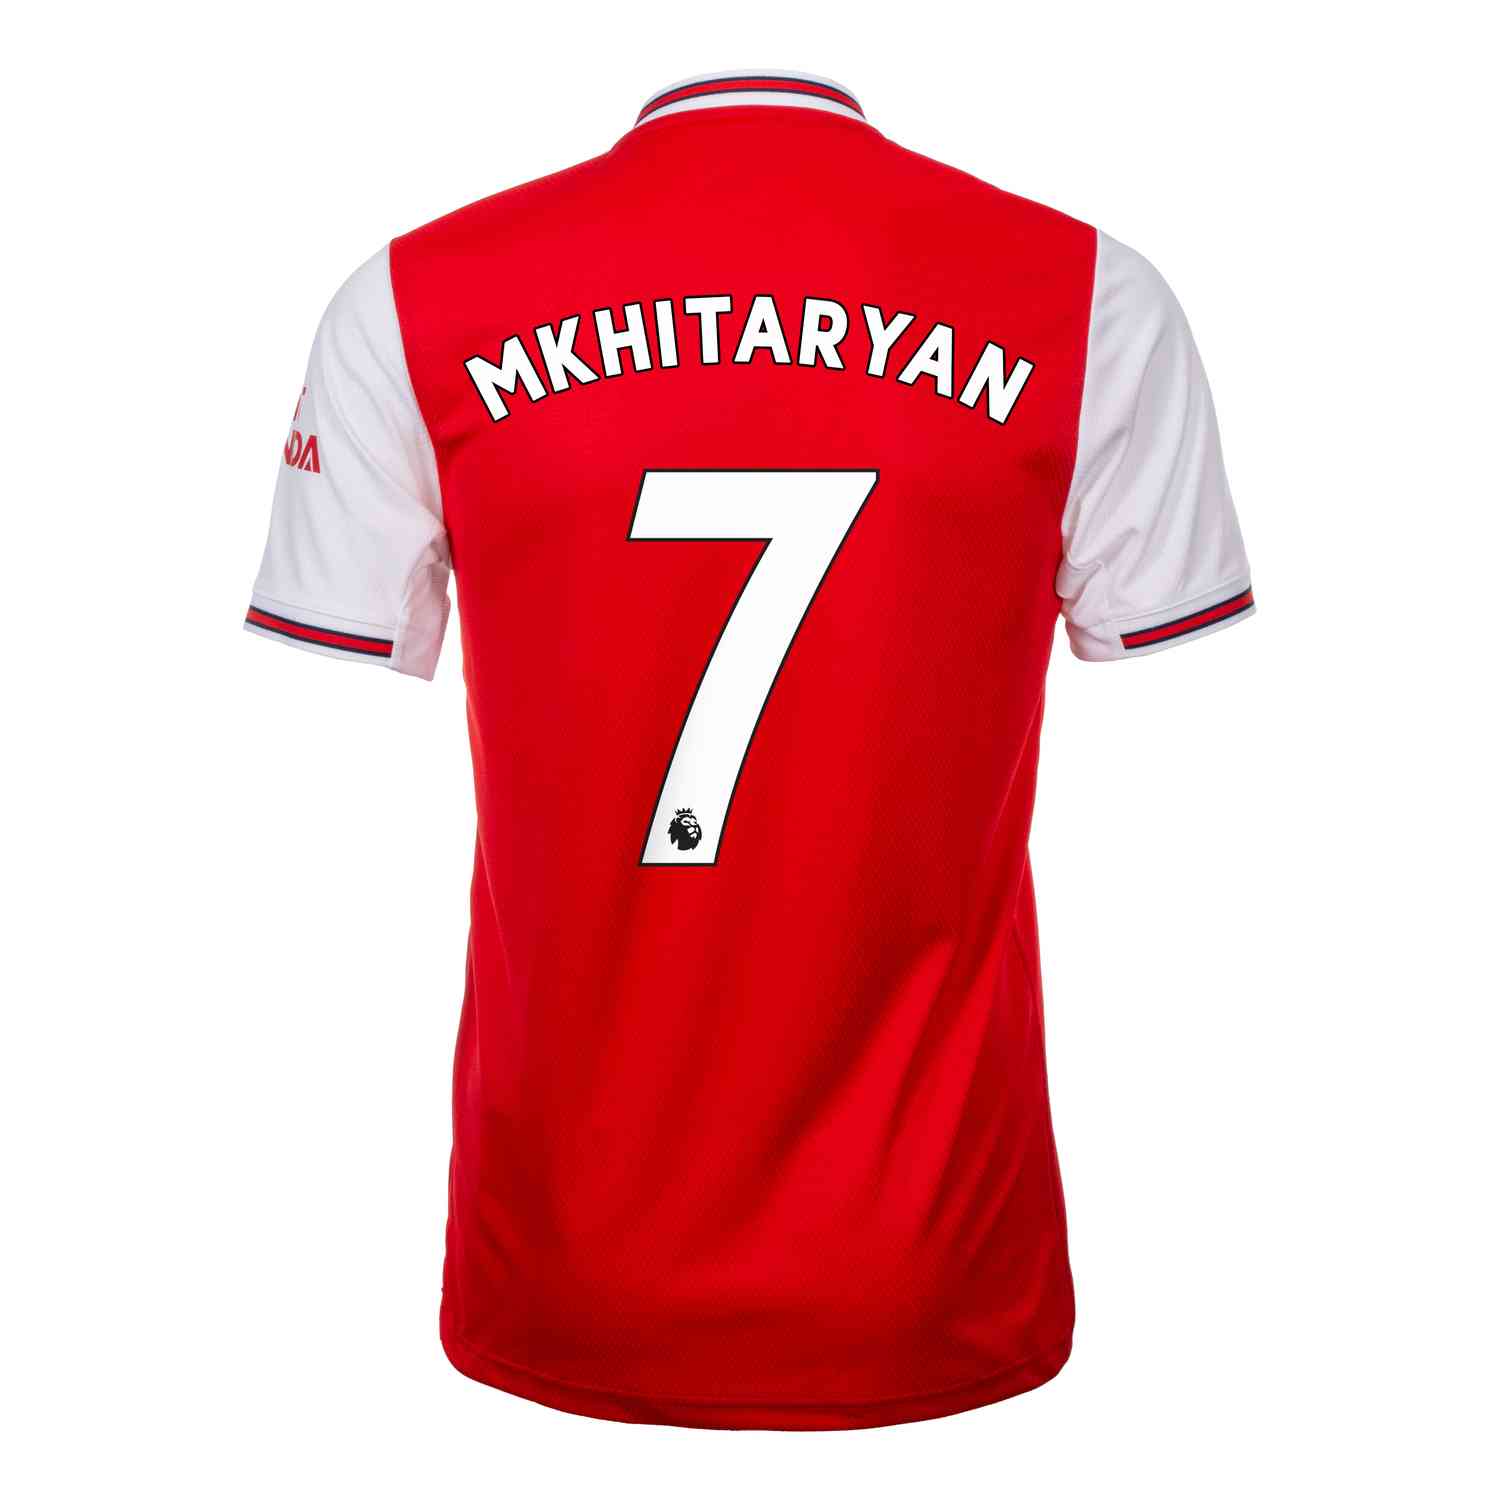 Pictures: Henrikh Mkhitaryan in Arsenal kit, Gallery, News